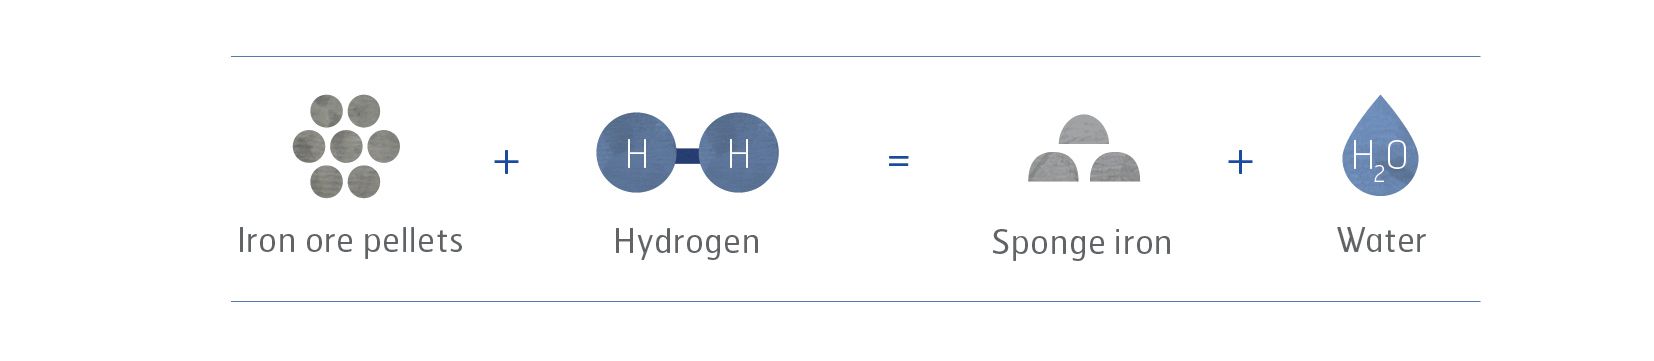 氢过程